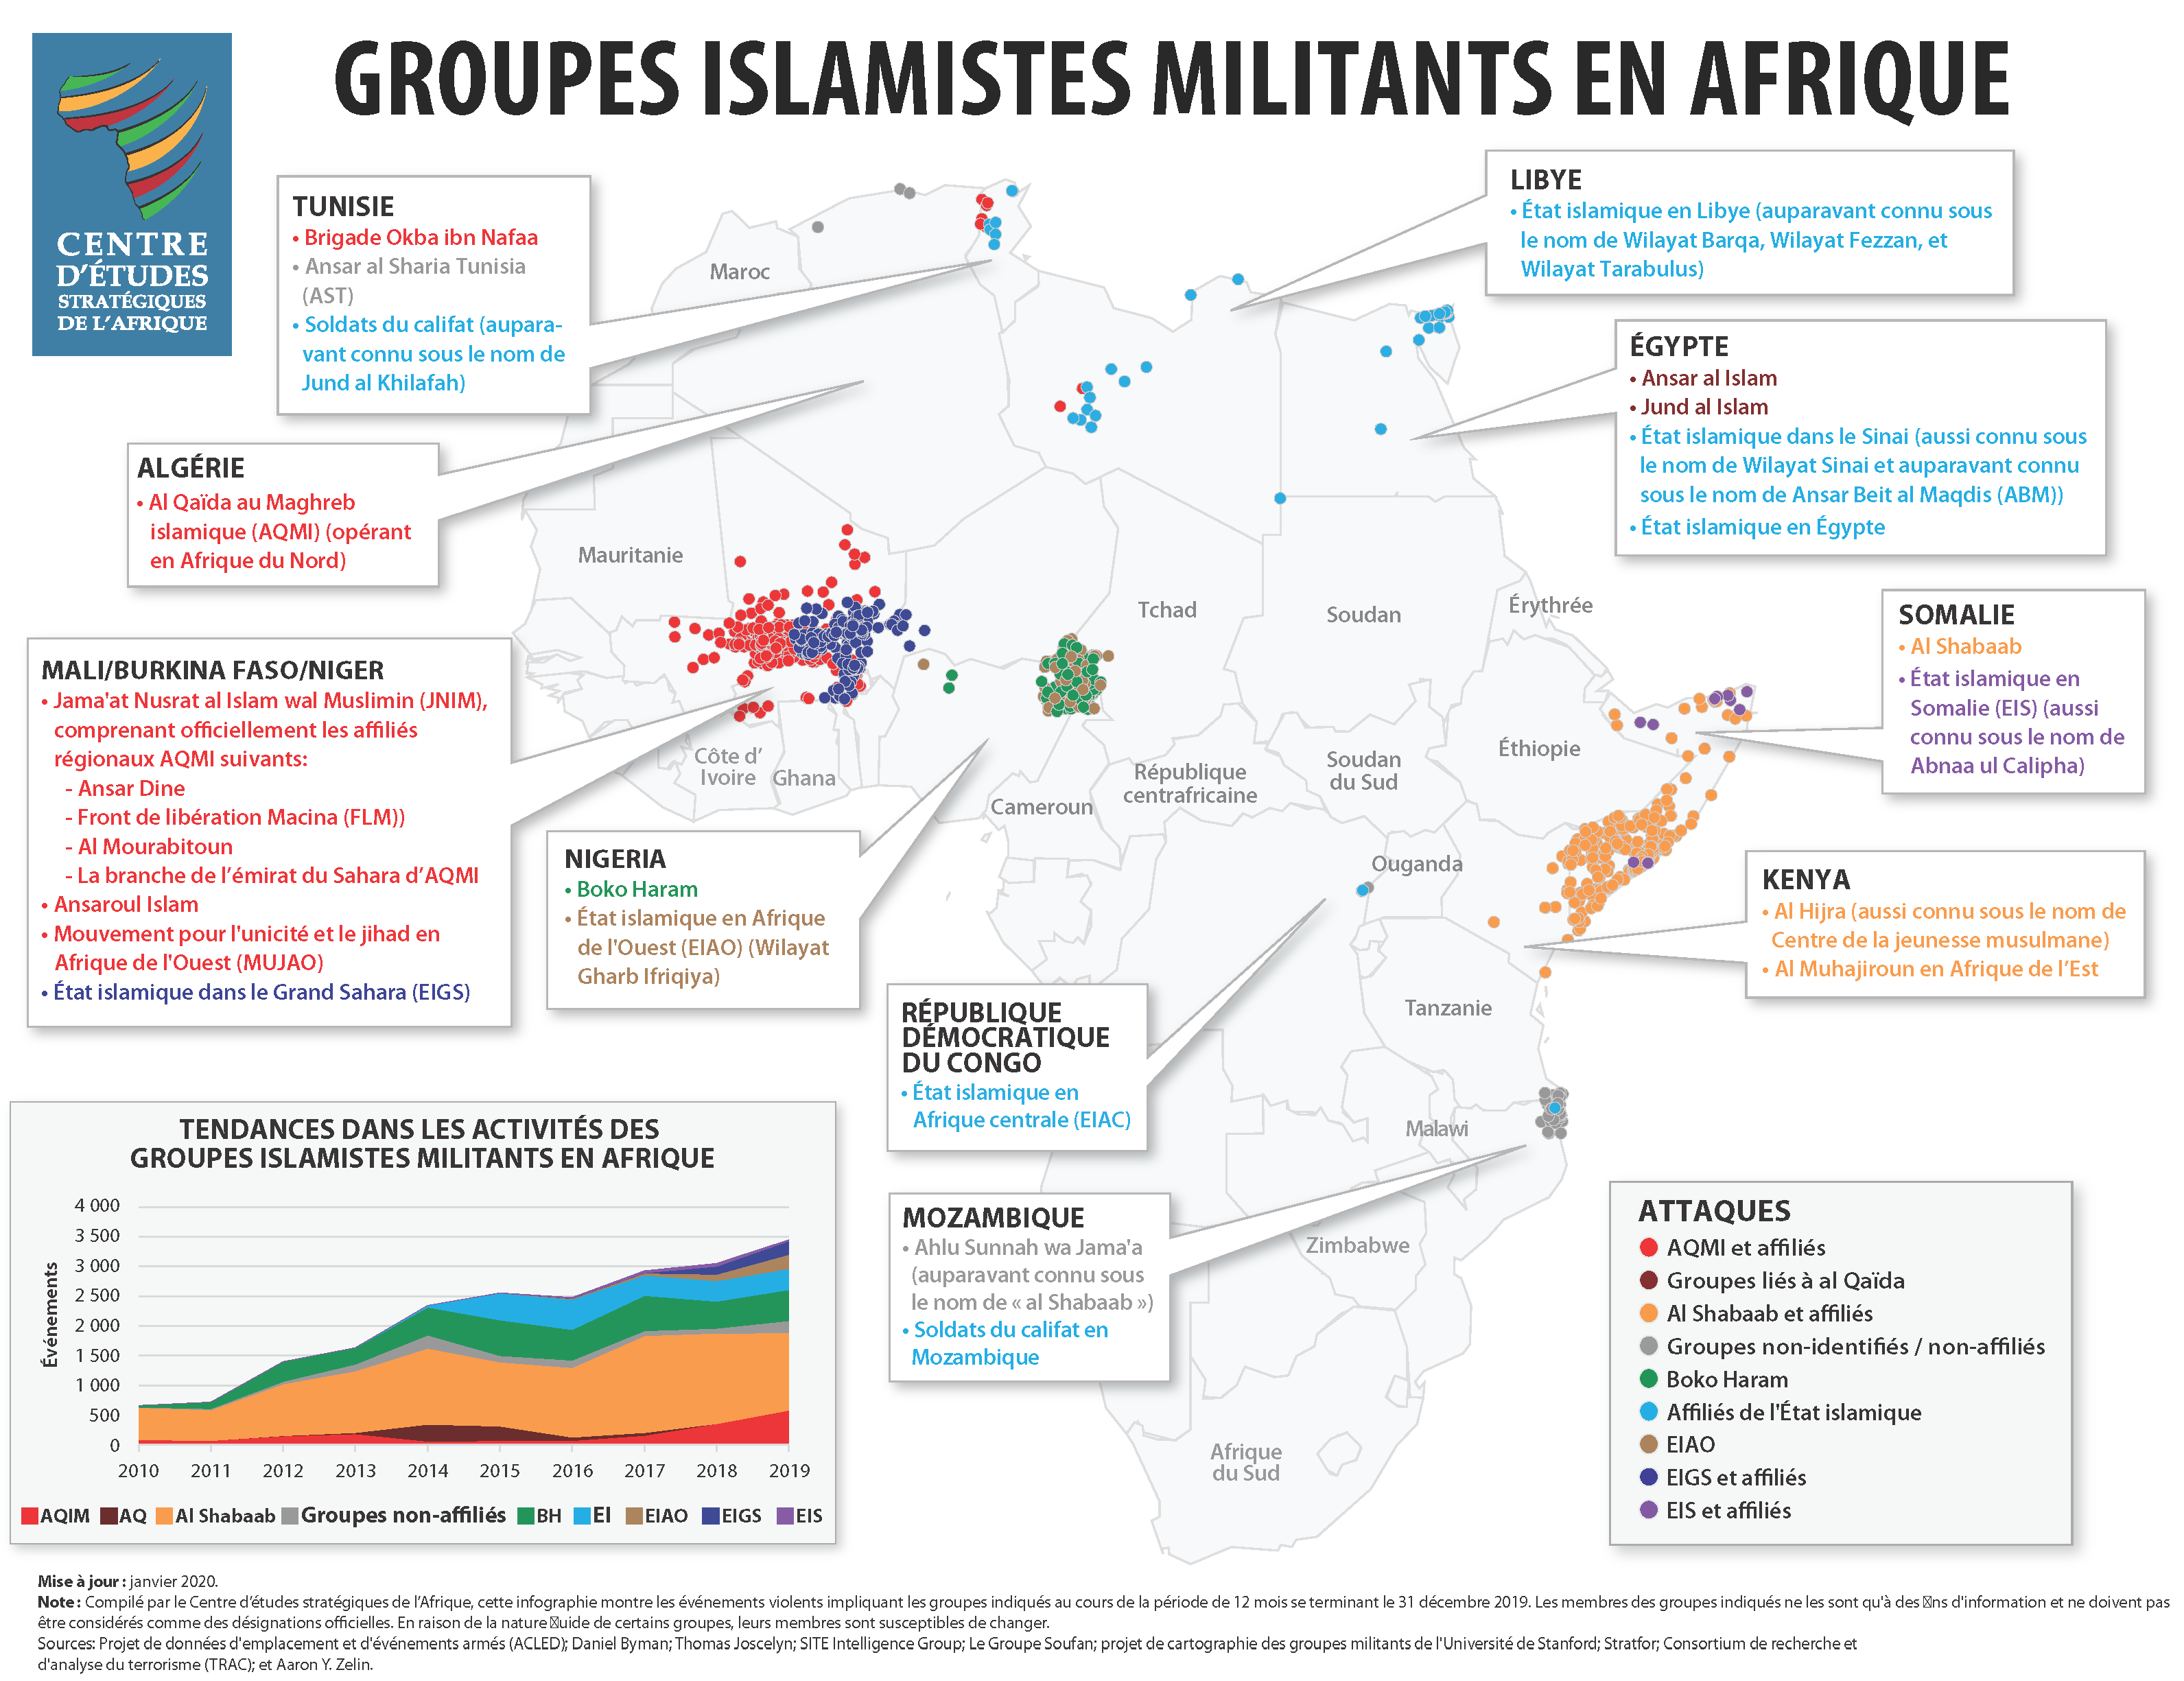 Groupes islamistes militants en Afrique